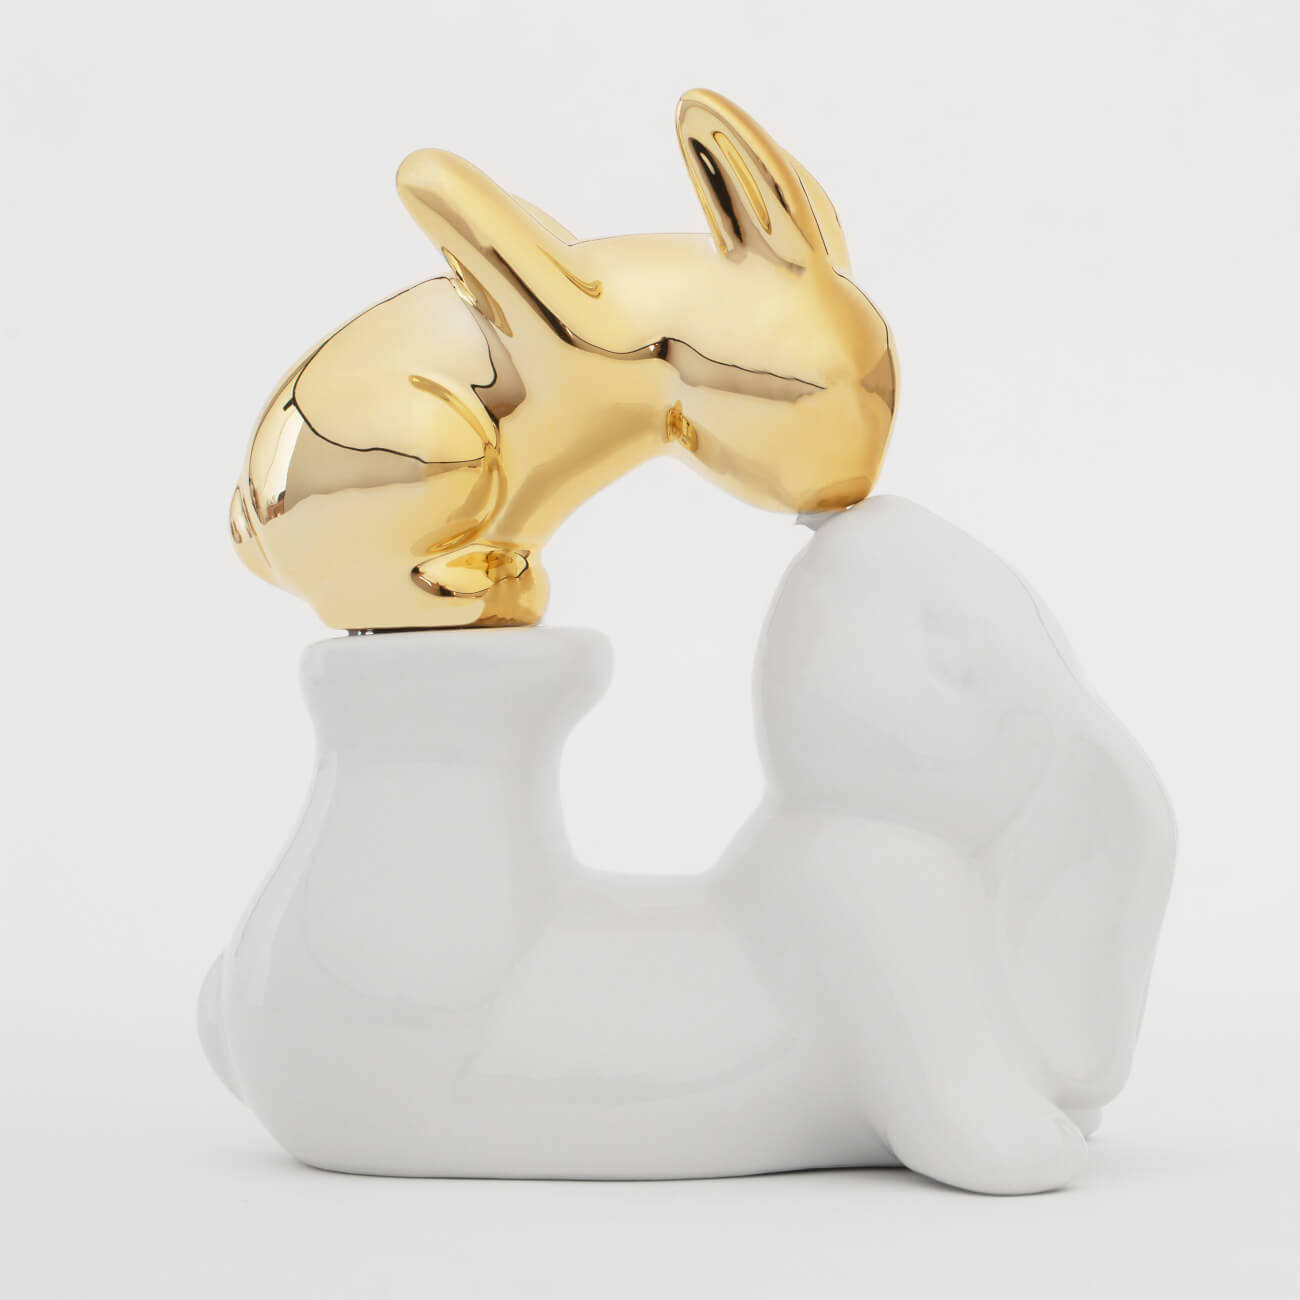 Статуэтка, 14 см, керамика, бело-золотистая, Крольчиха и крольчонок, Easter gold статуэтка слон